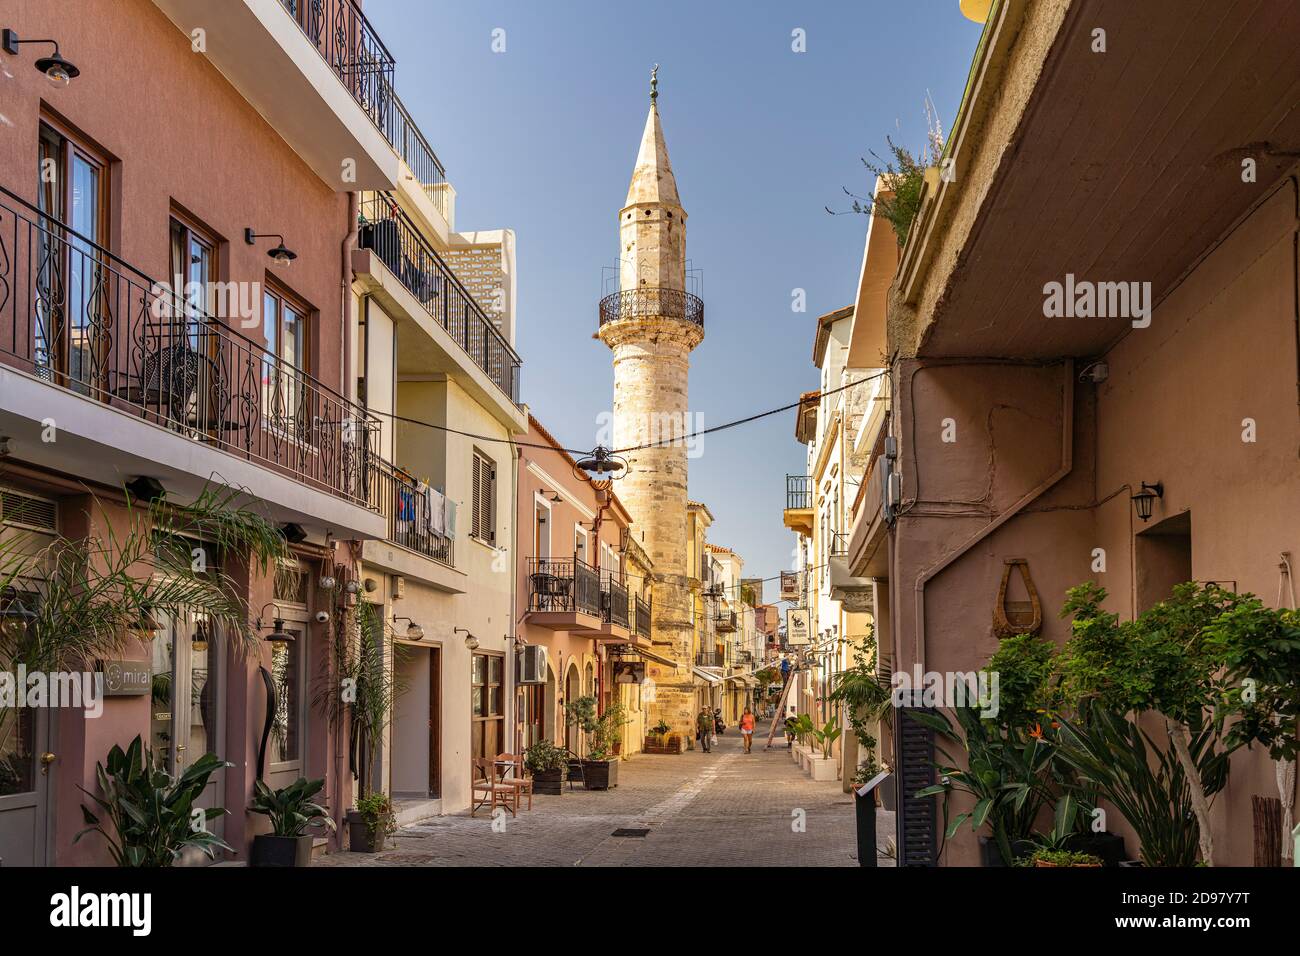 Minarett der Ahmet-Aga-Moschee Cin der Altstadt von Chania, Kreta, Griechenland, Europa | Ahmet Aga Minaret dans la vieille ville de Chania, Crète, Gree Banque D'Images